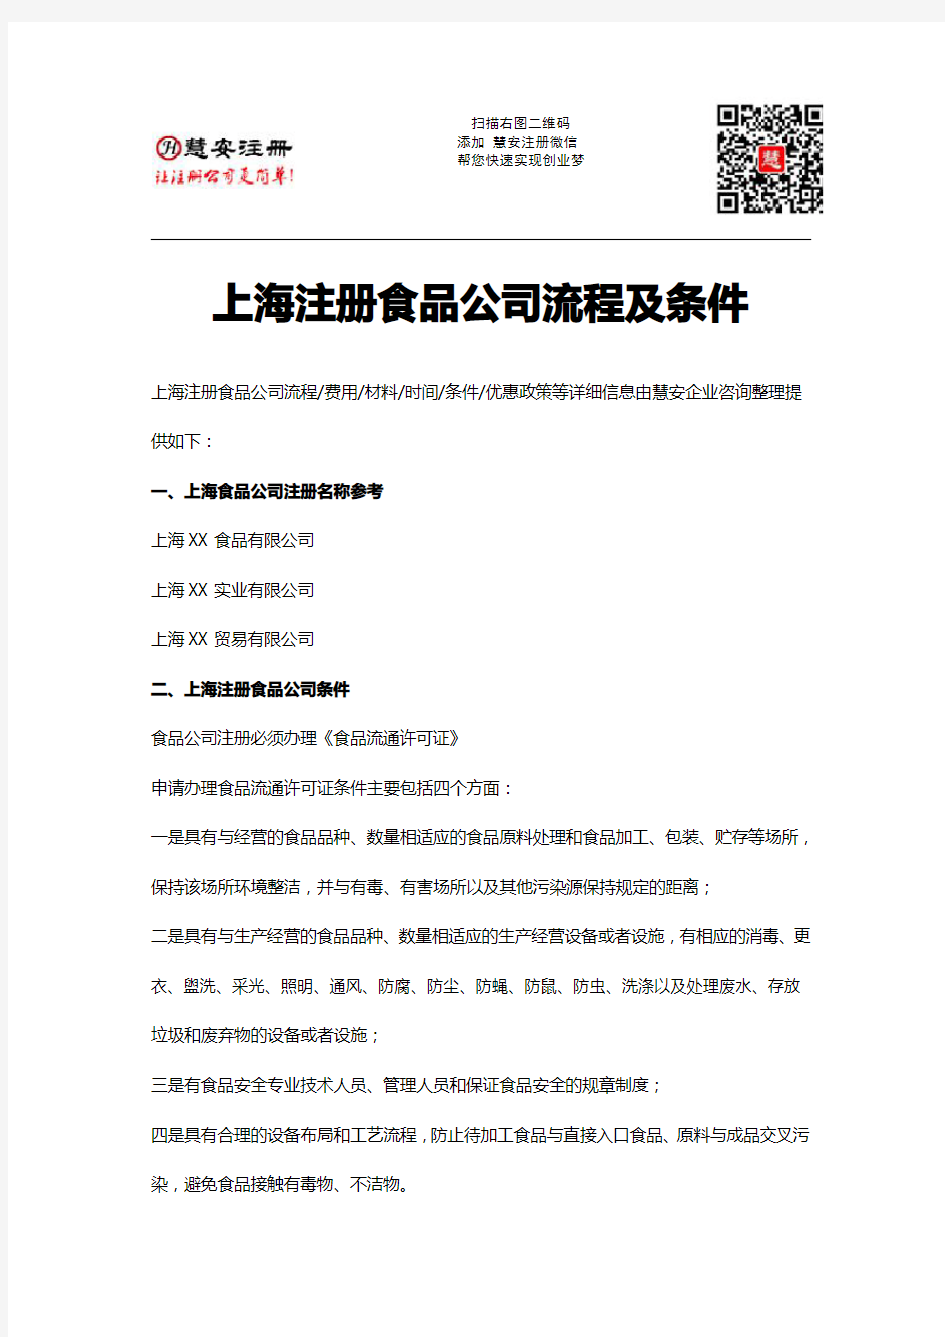 上海注册食品公司流程及条件